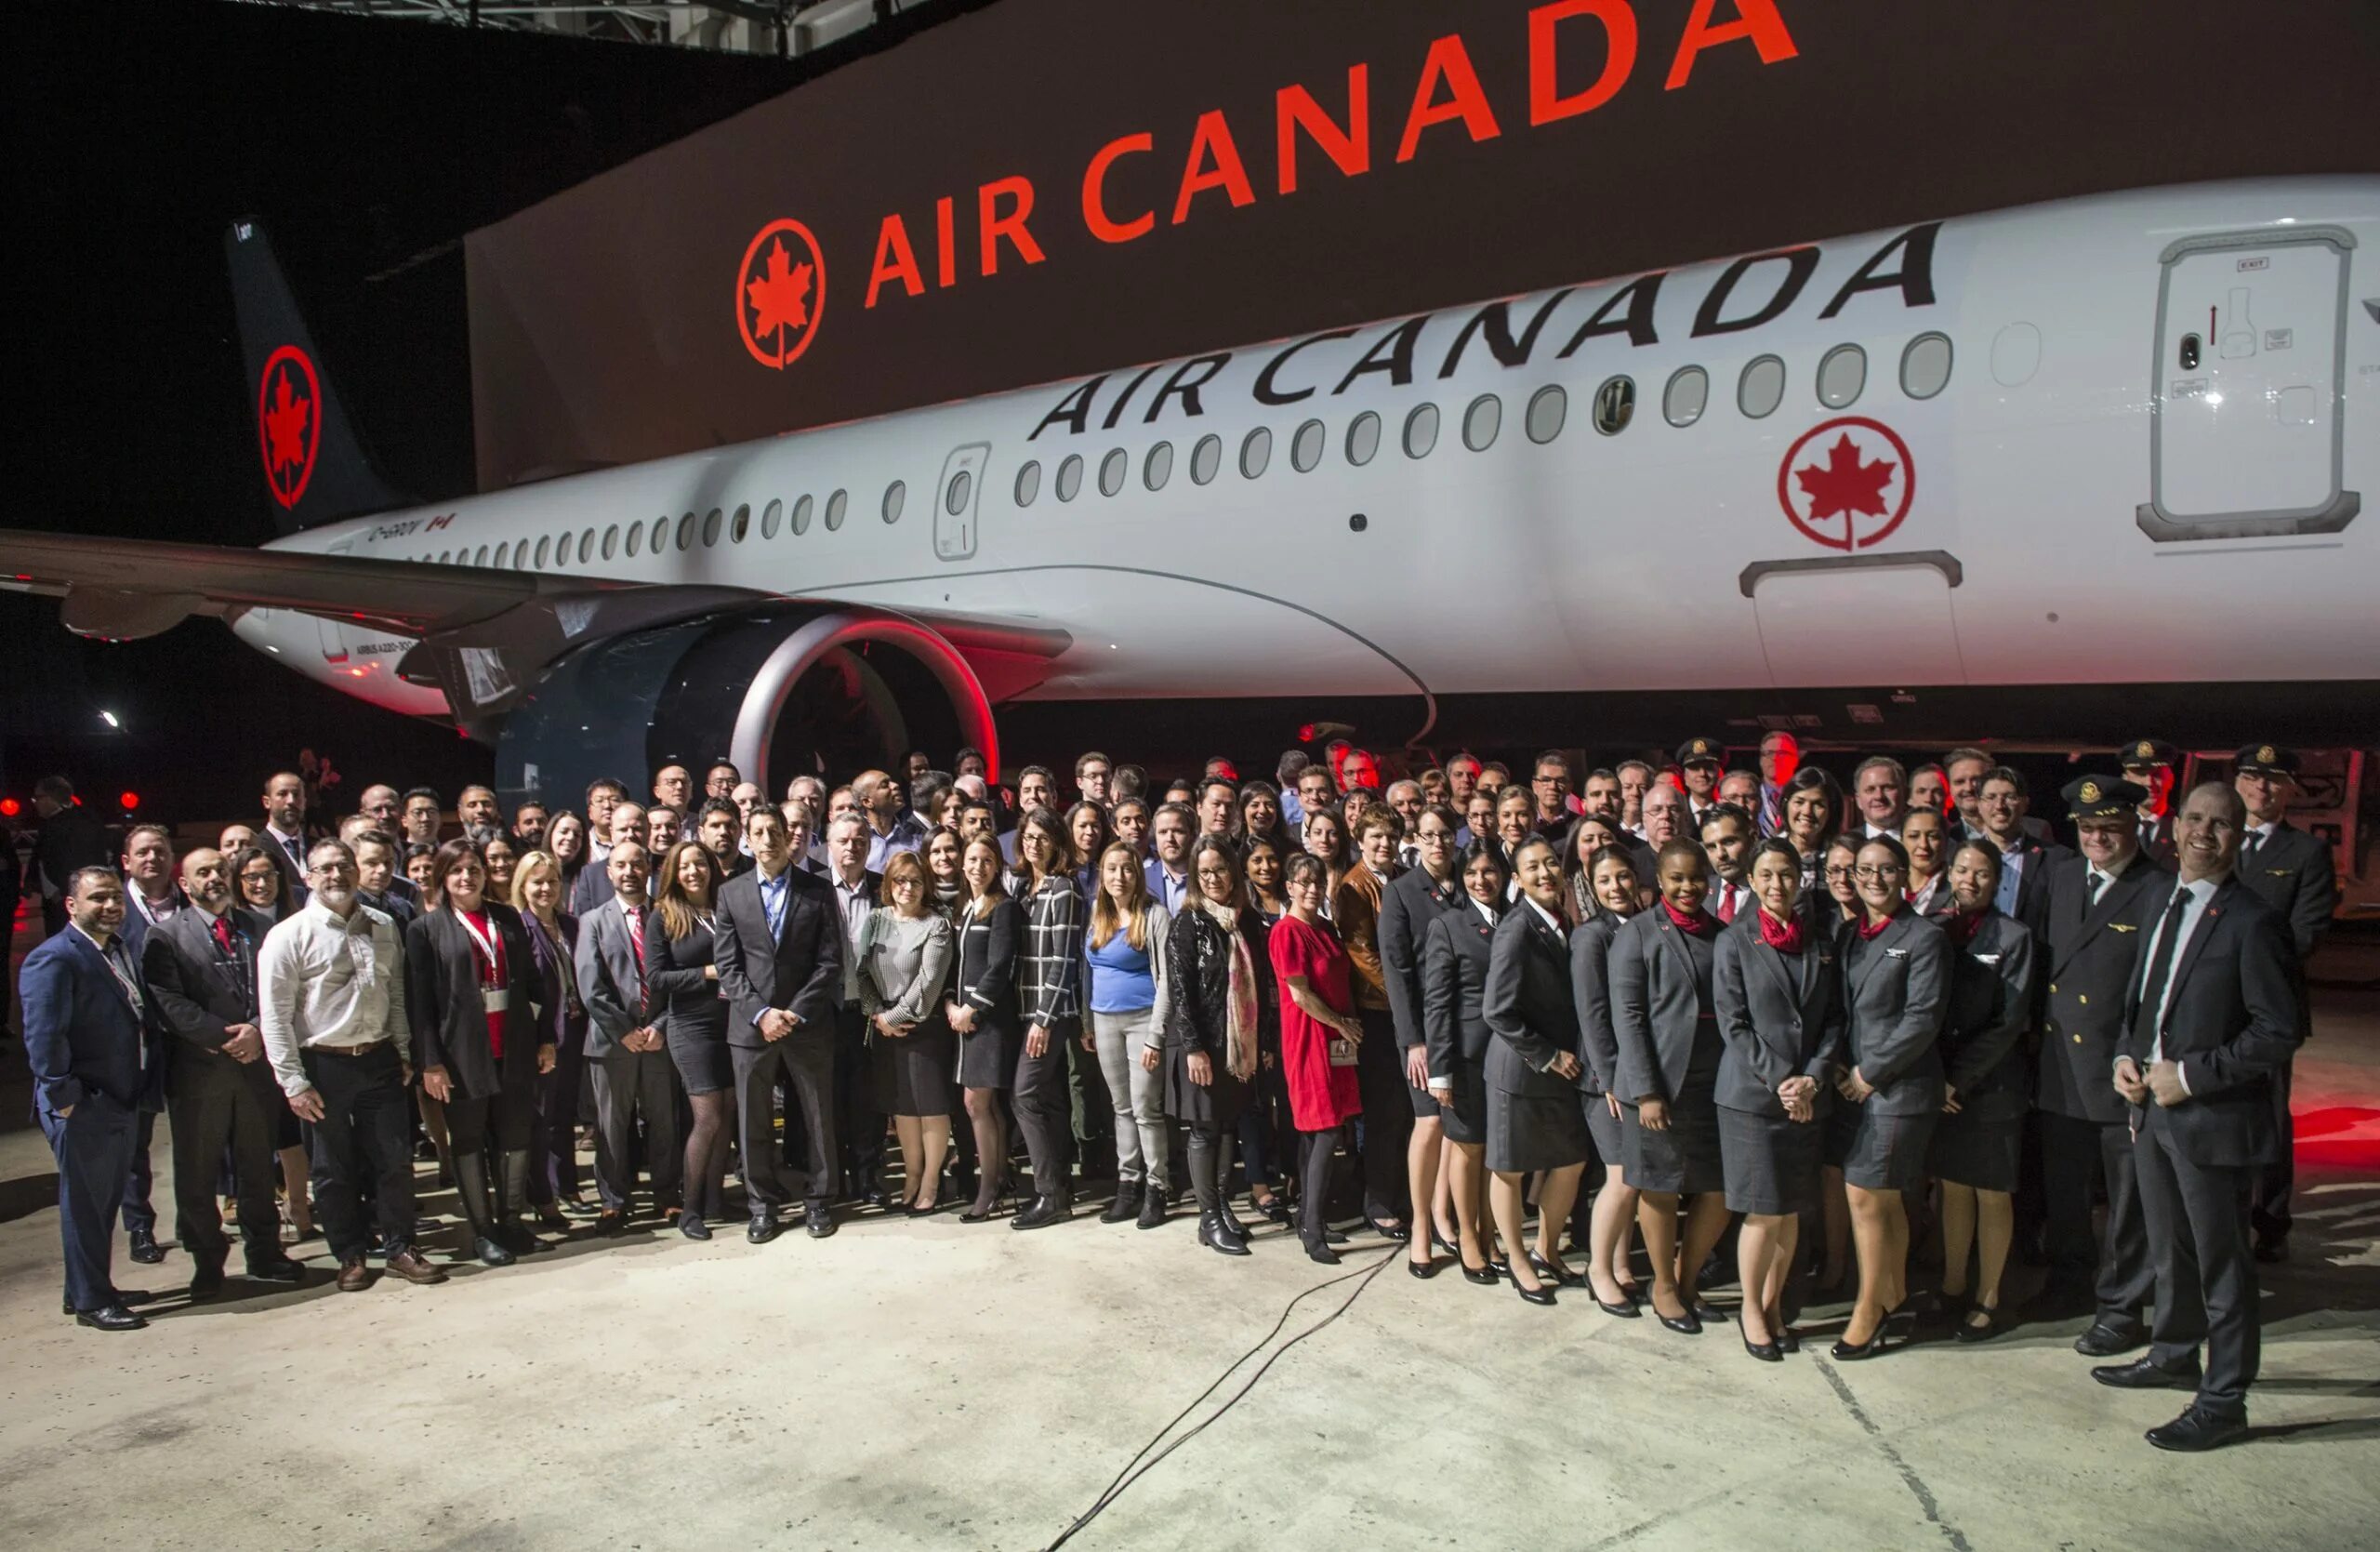 Новости эйр. Air Canada. Фирма Air Canada одежда. Самые красивые пилоты Air Canada. Canadian Air Travel industry.